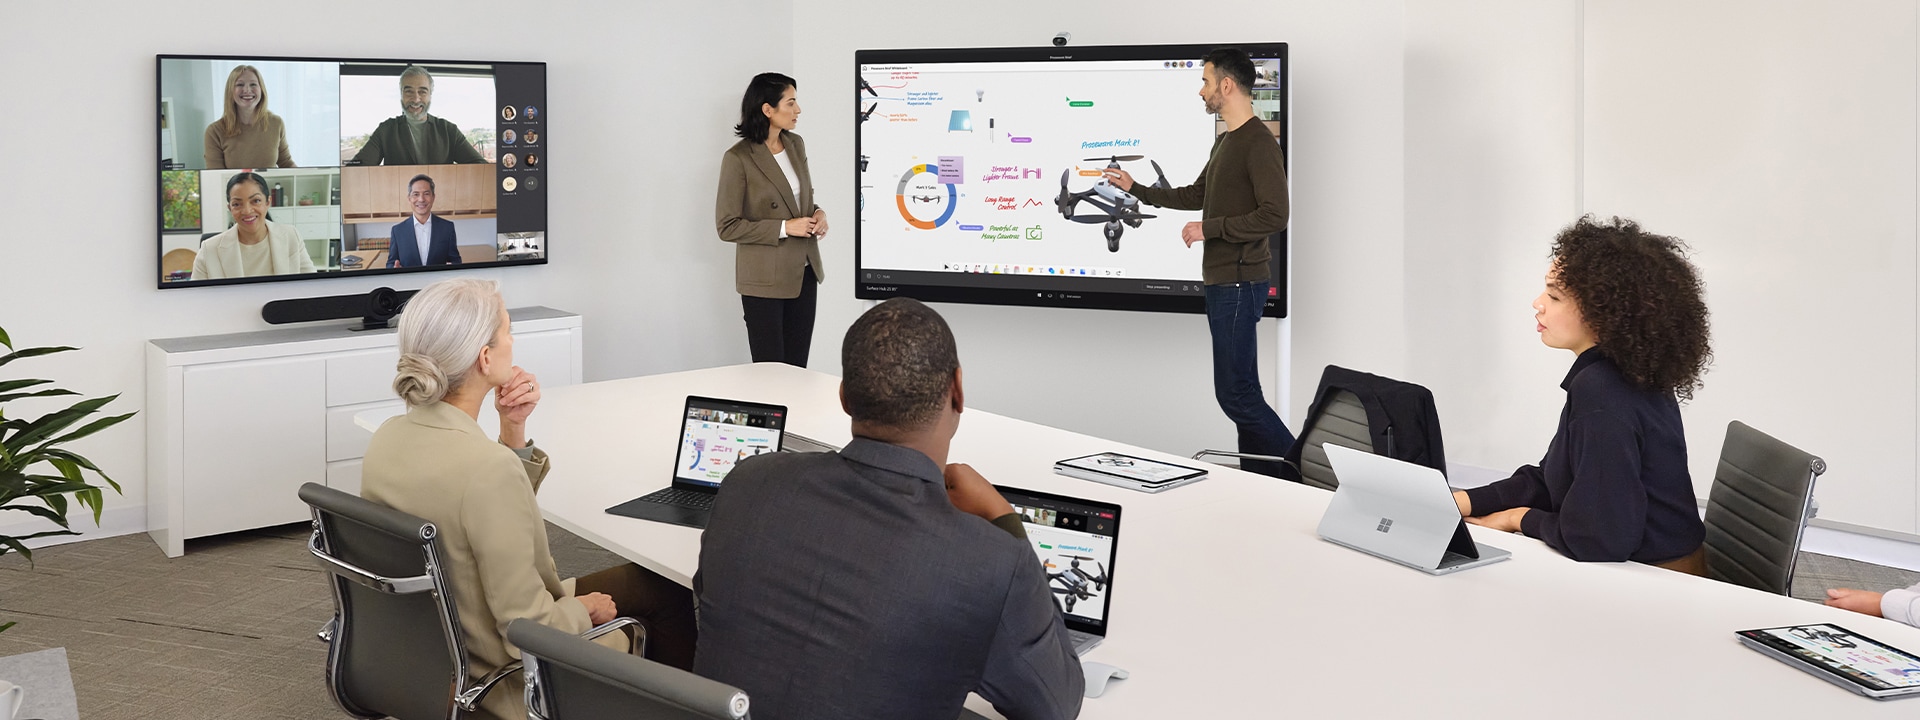 Δύο συνάδελφοι συνεργάζονται χρησιμοποιώντας ένα Surface Hub 2S, ενώ συντονίζουν επίσης μια εικονική σύσκεψη στο Teams σε ένα Surface Laptop σε ένα κοντινό γραφείο